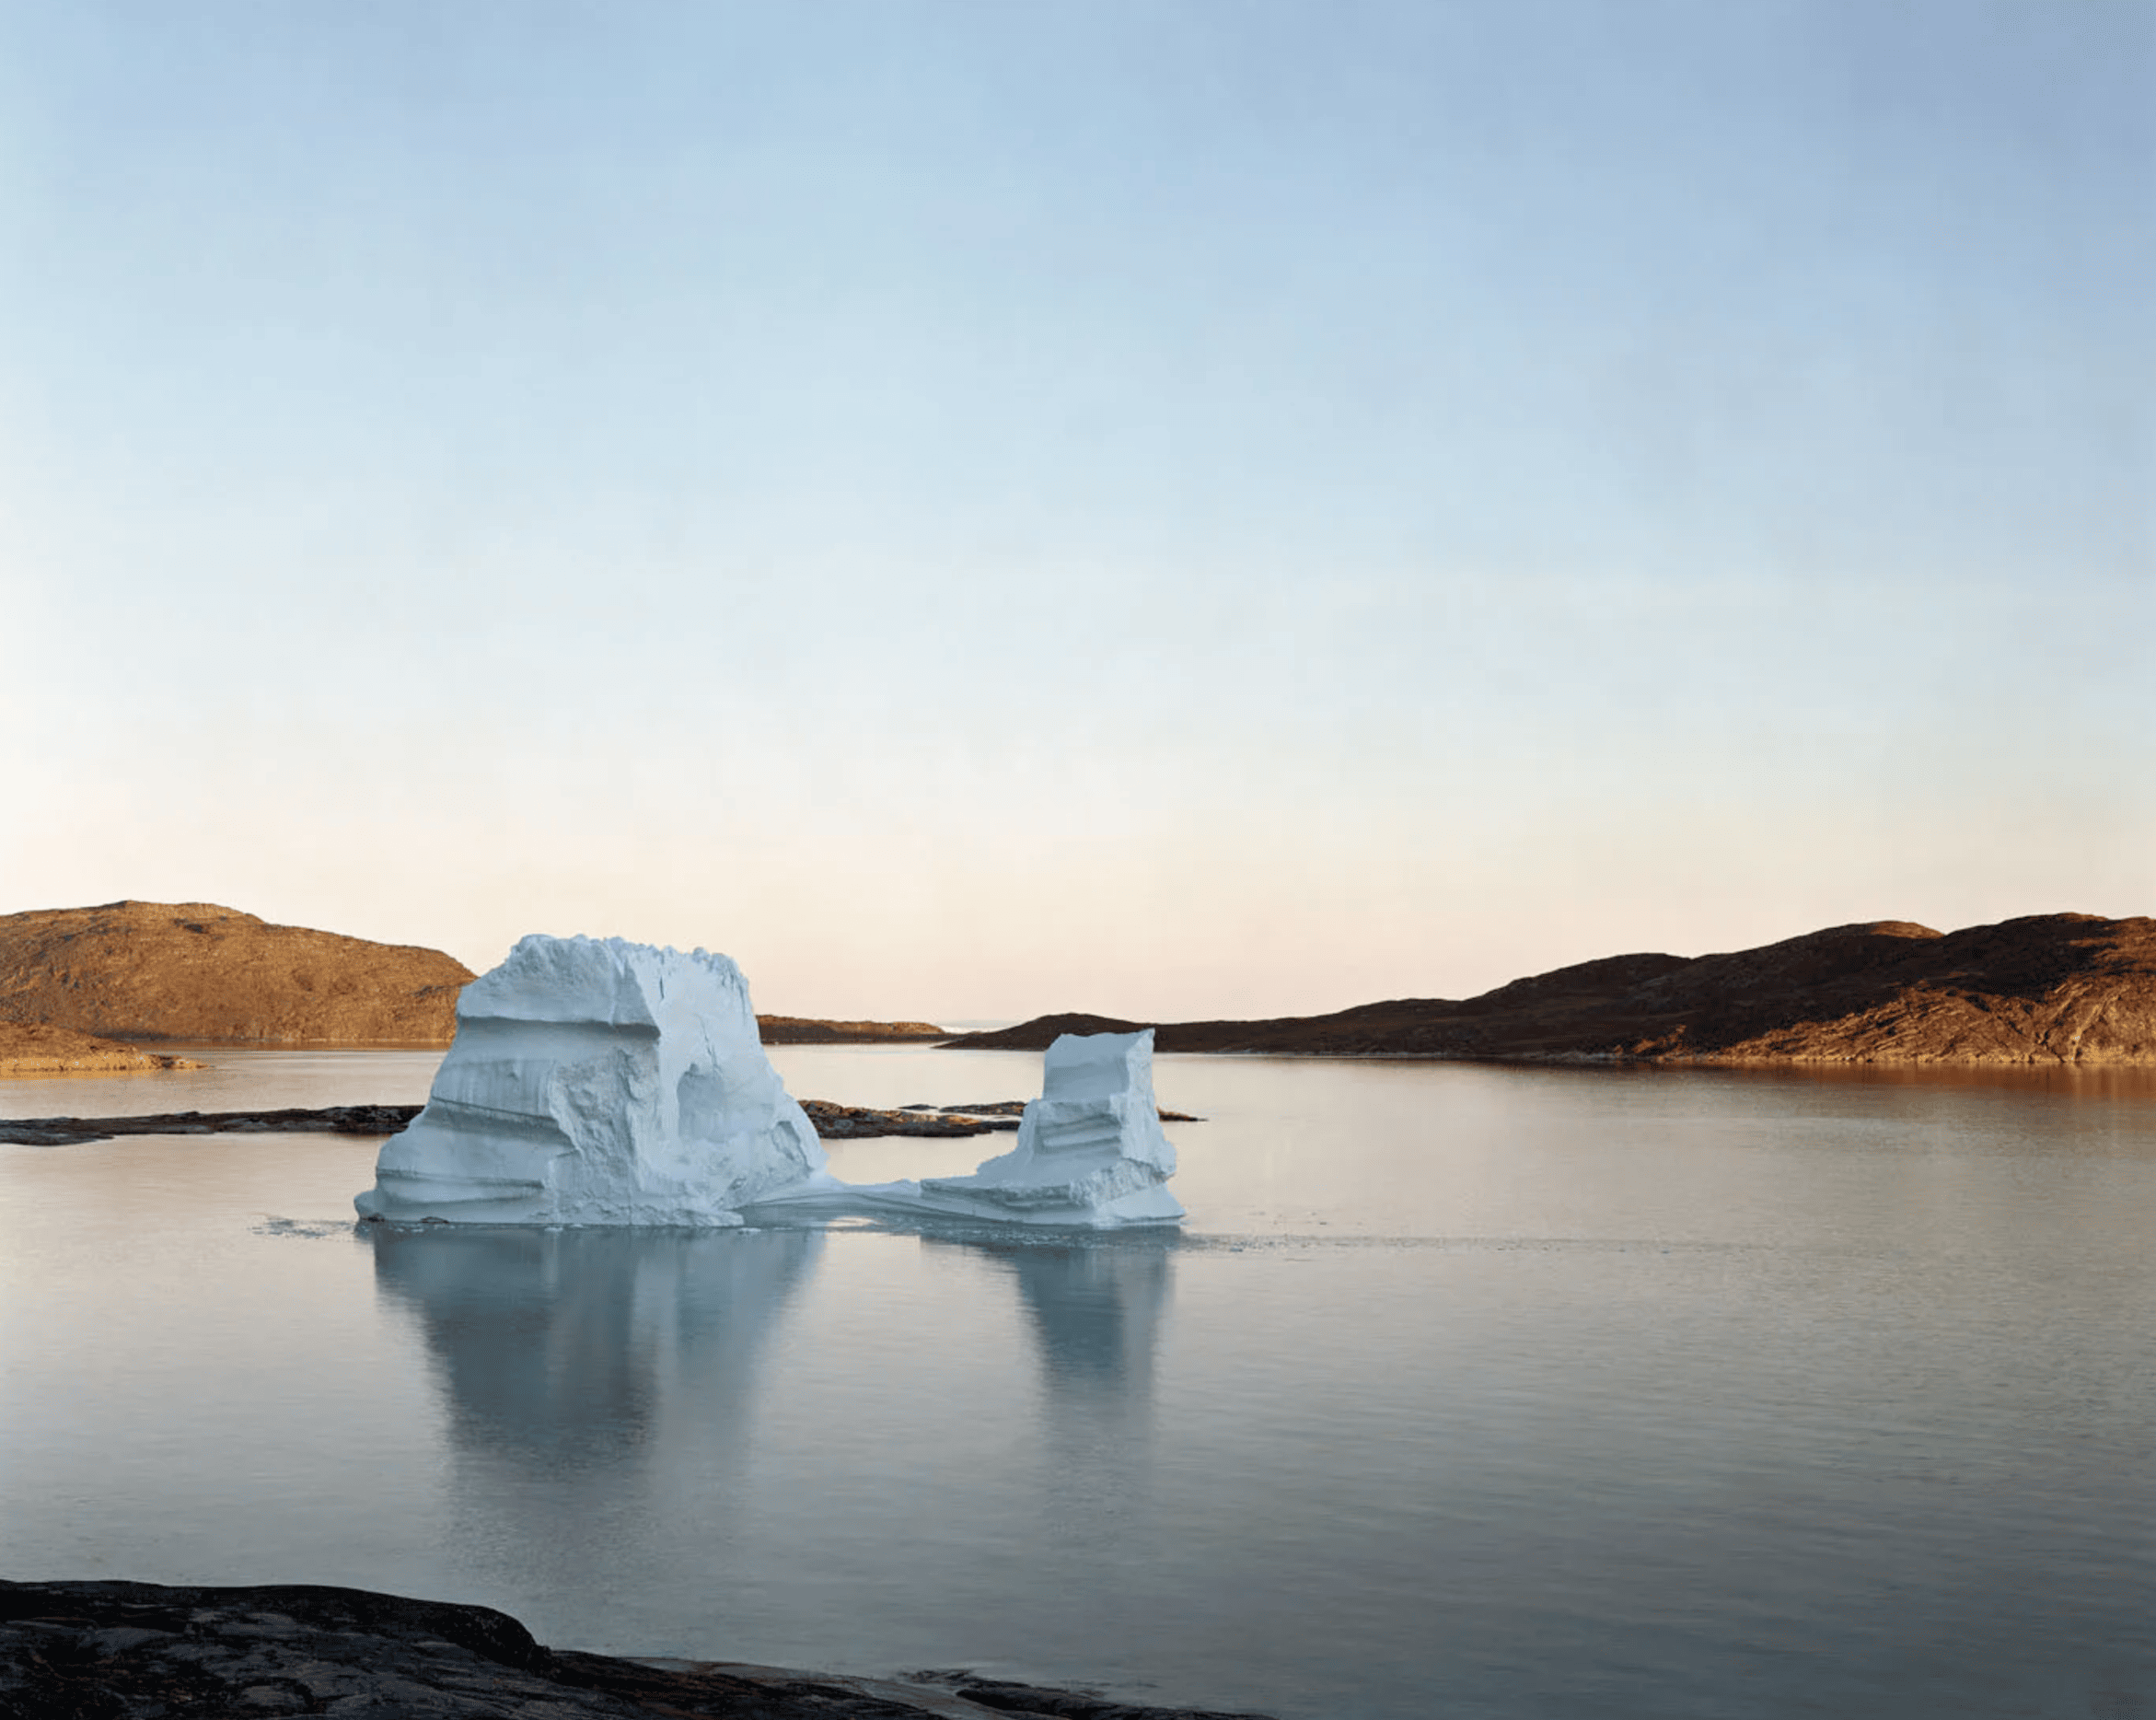 Iceberg Rodebay 2, 07/2003, 69° 22’16” N, 50° 54’08” W, 2003 Olaf Otto Becker